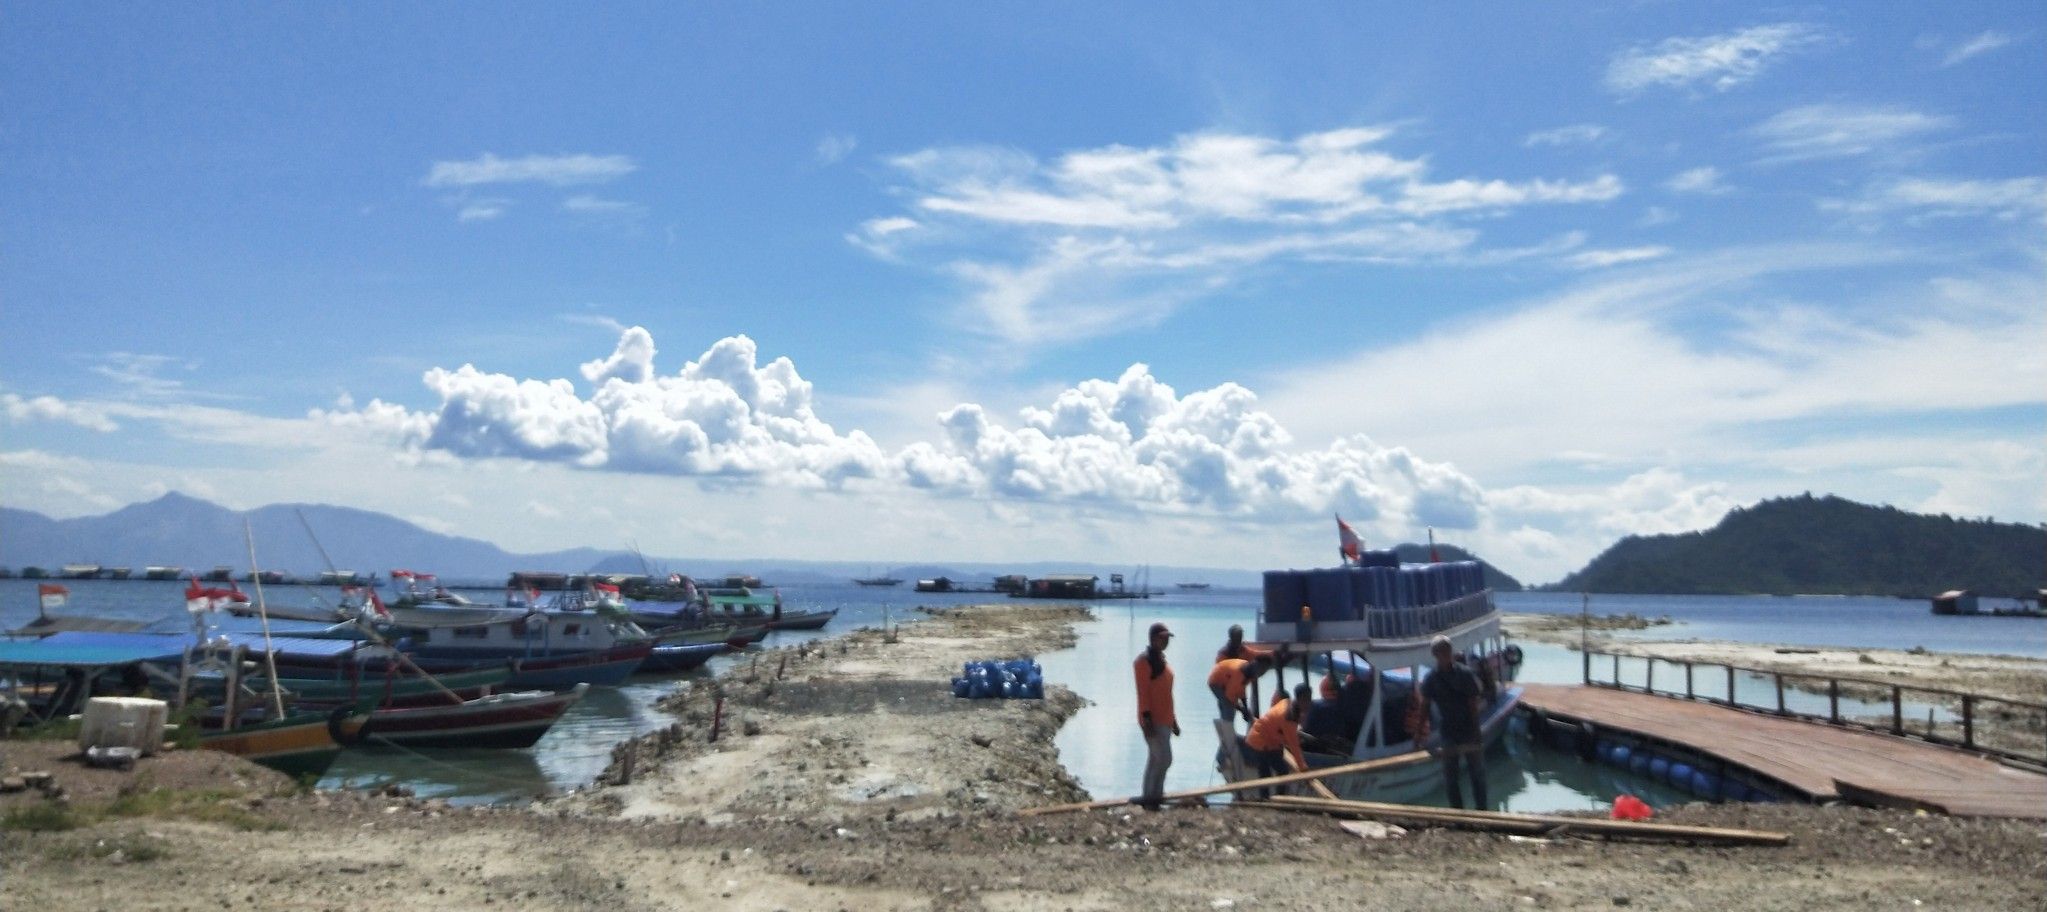 印尼楠榜省! tegal mas 海边 值得大家去关注， 其风景不输于巴厘岛的海边😁 10人一起去，